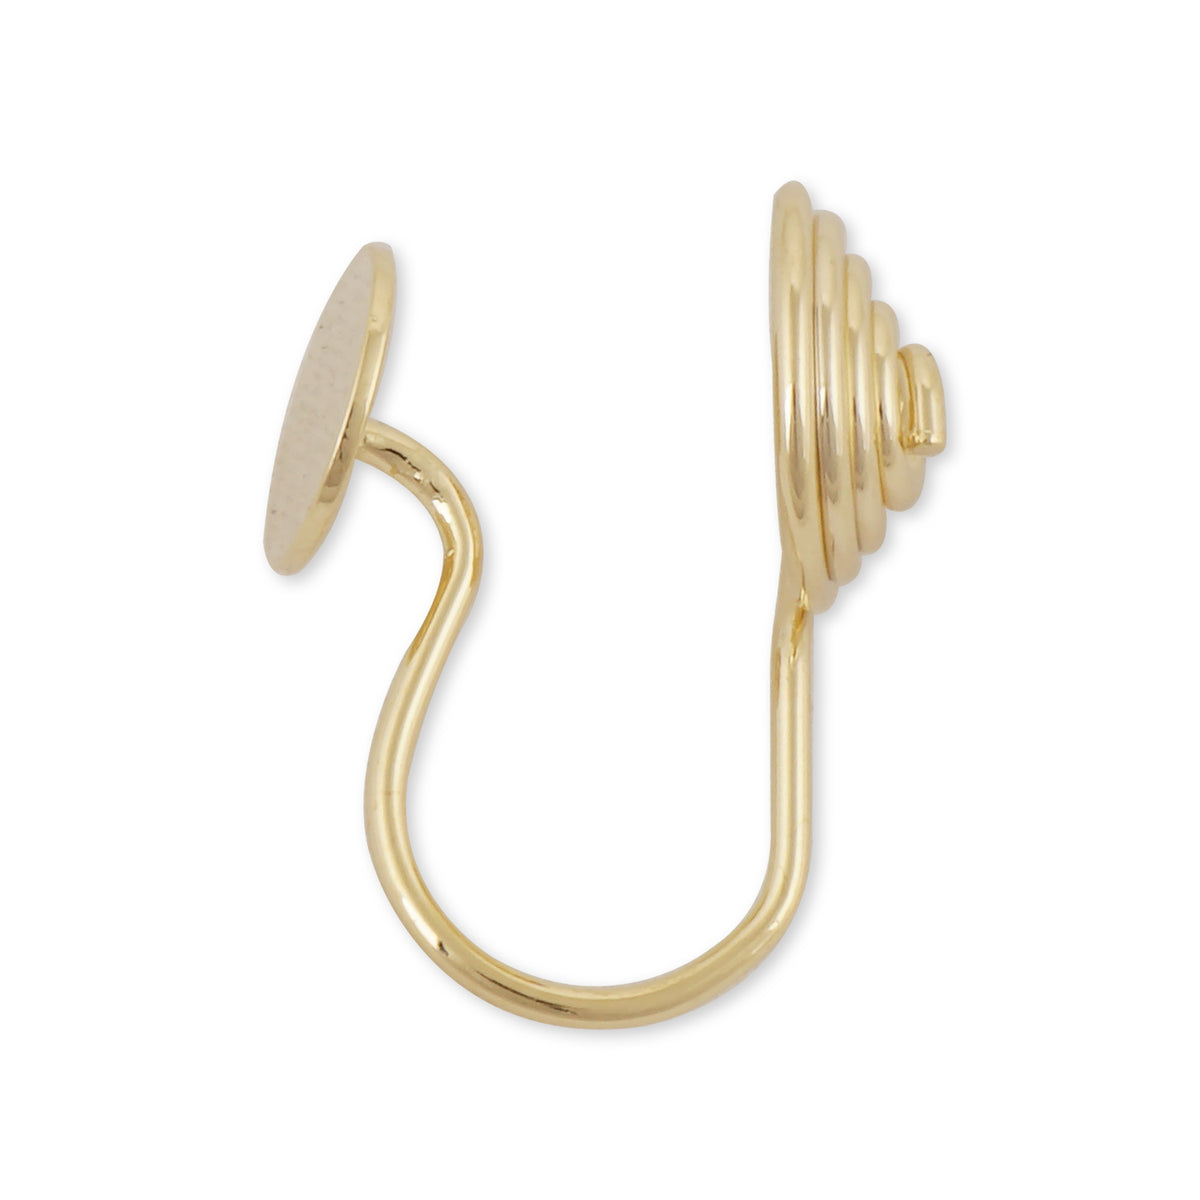 Wholesales 100 Earring Nuts for Back of Earrings Metal Earring Backs Silver  Barrel Nut Bullet Stoppers 5x6mm